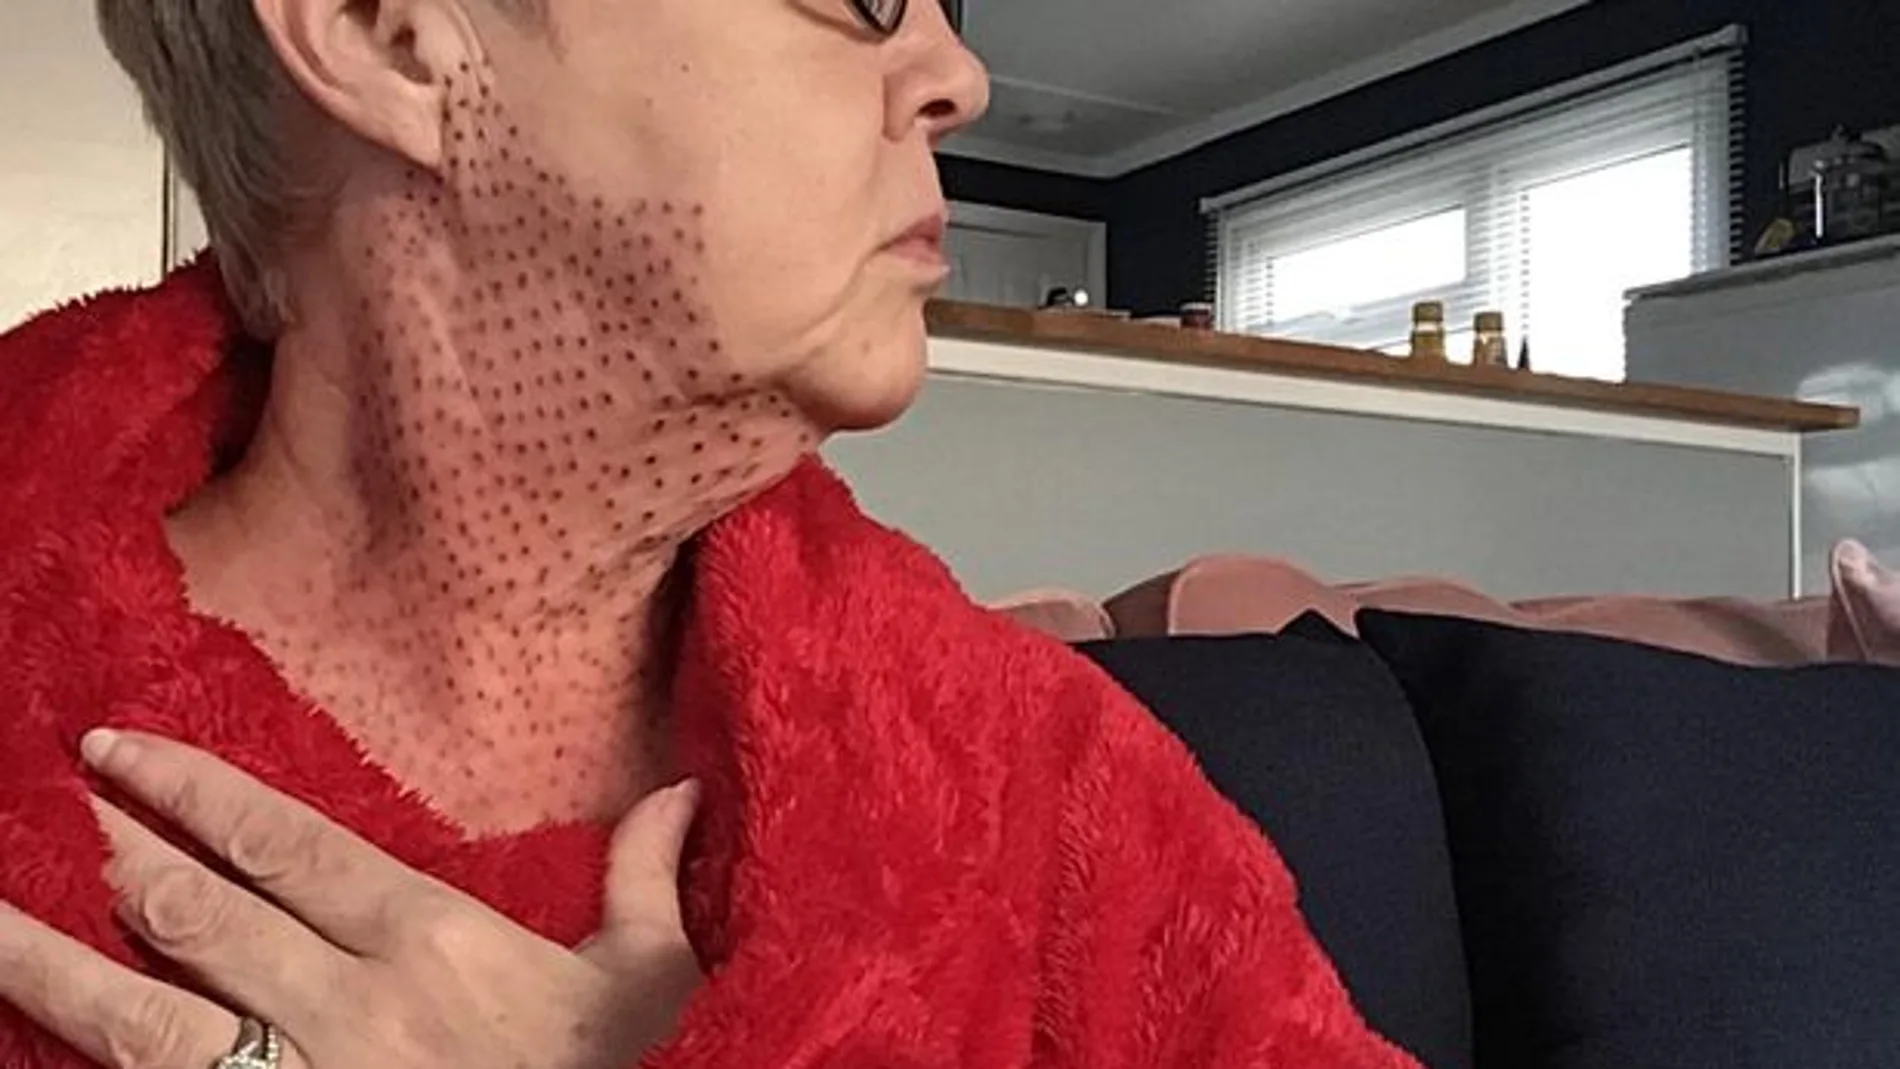 El cuello de la mujer quedó repleto de puntos rojos tras su operación de papada